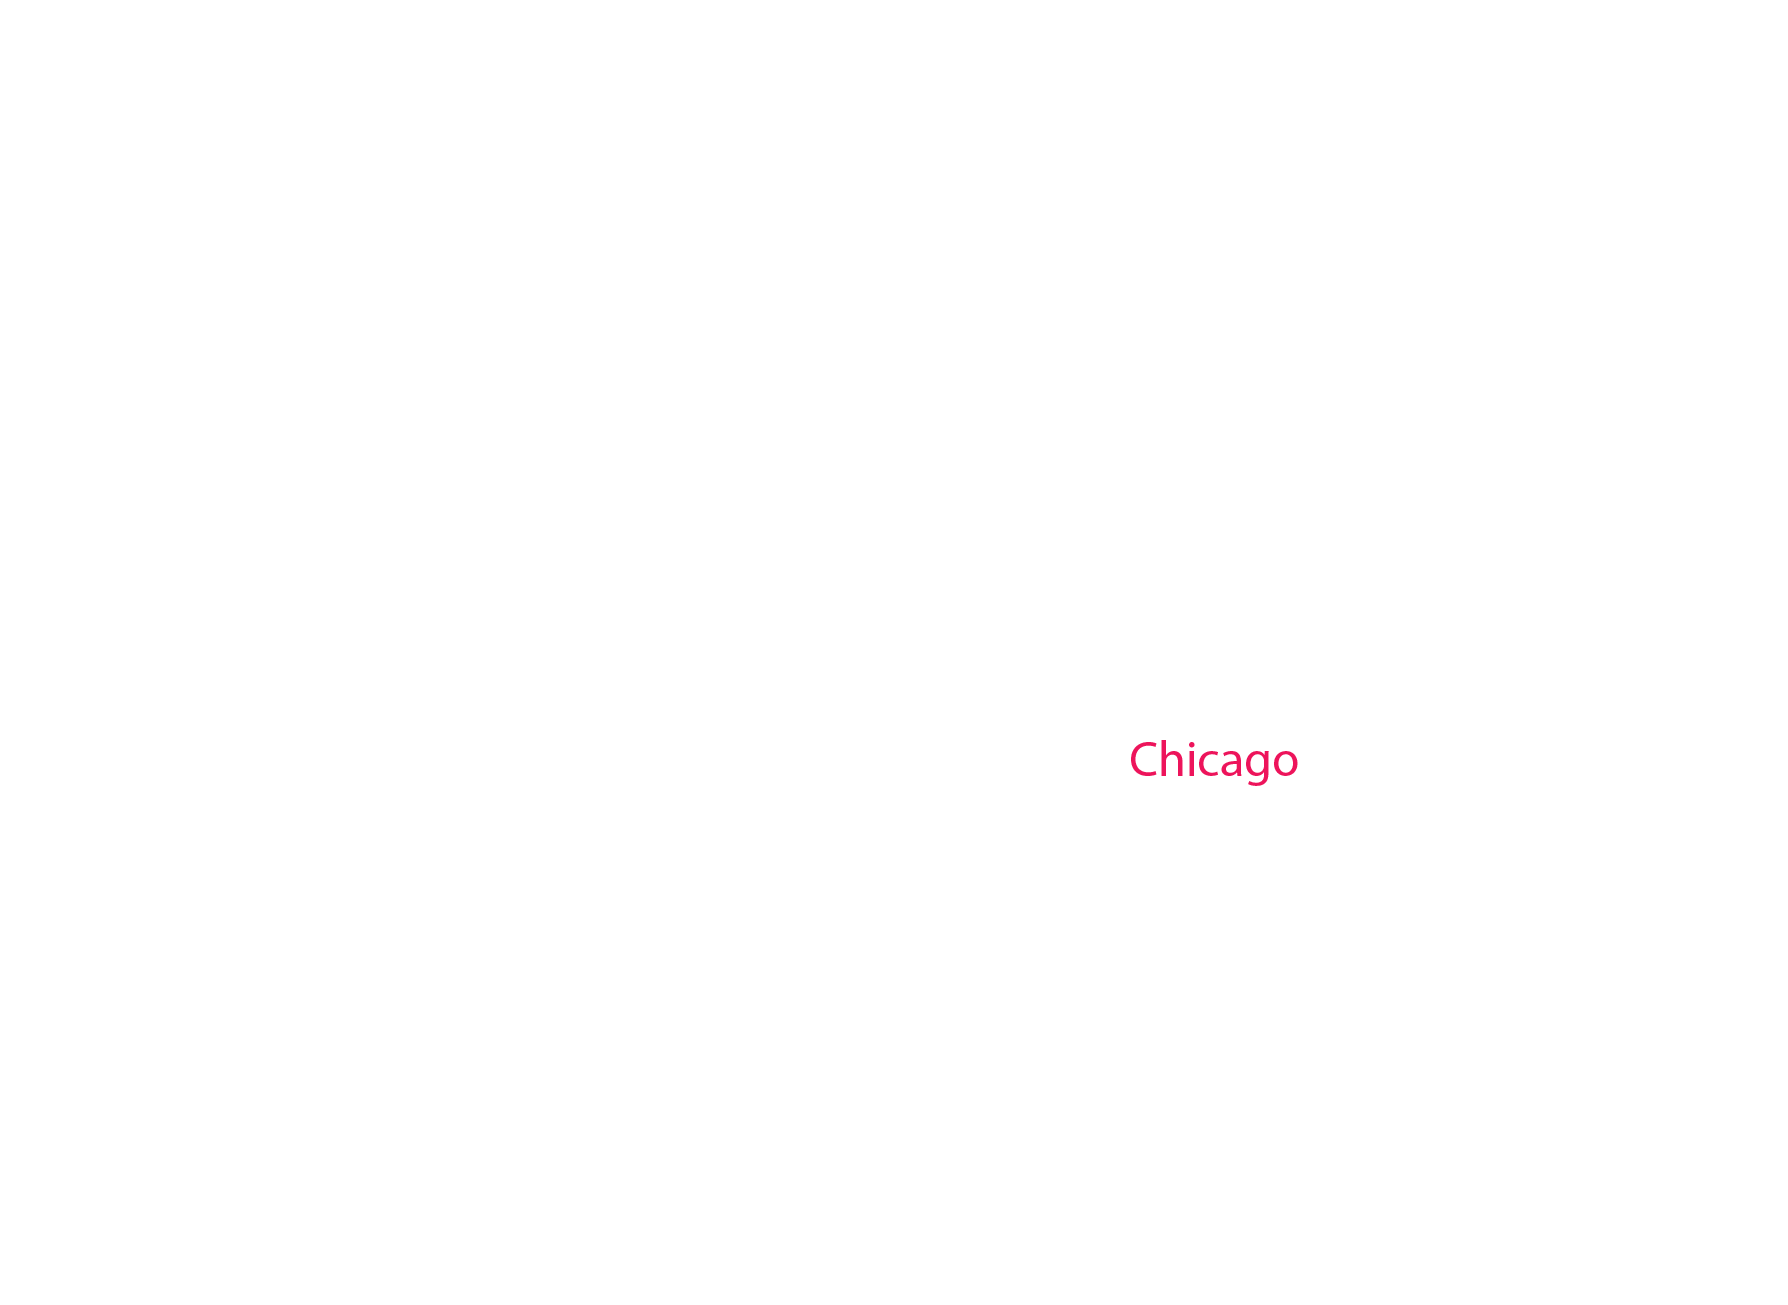 Chicago label